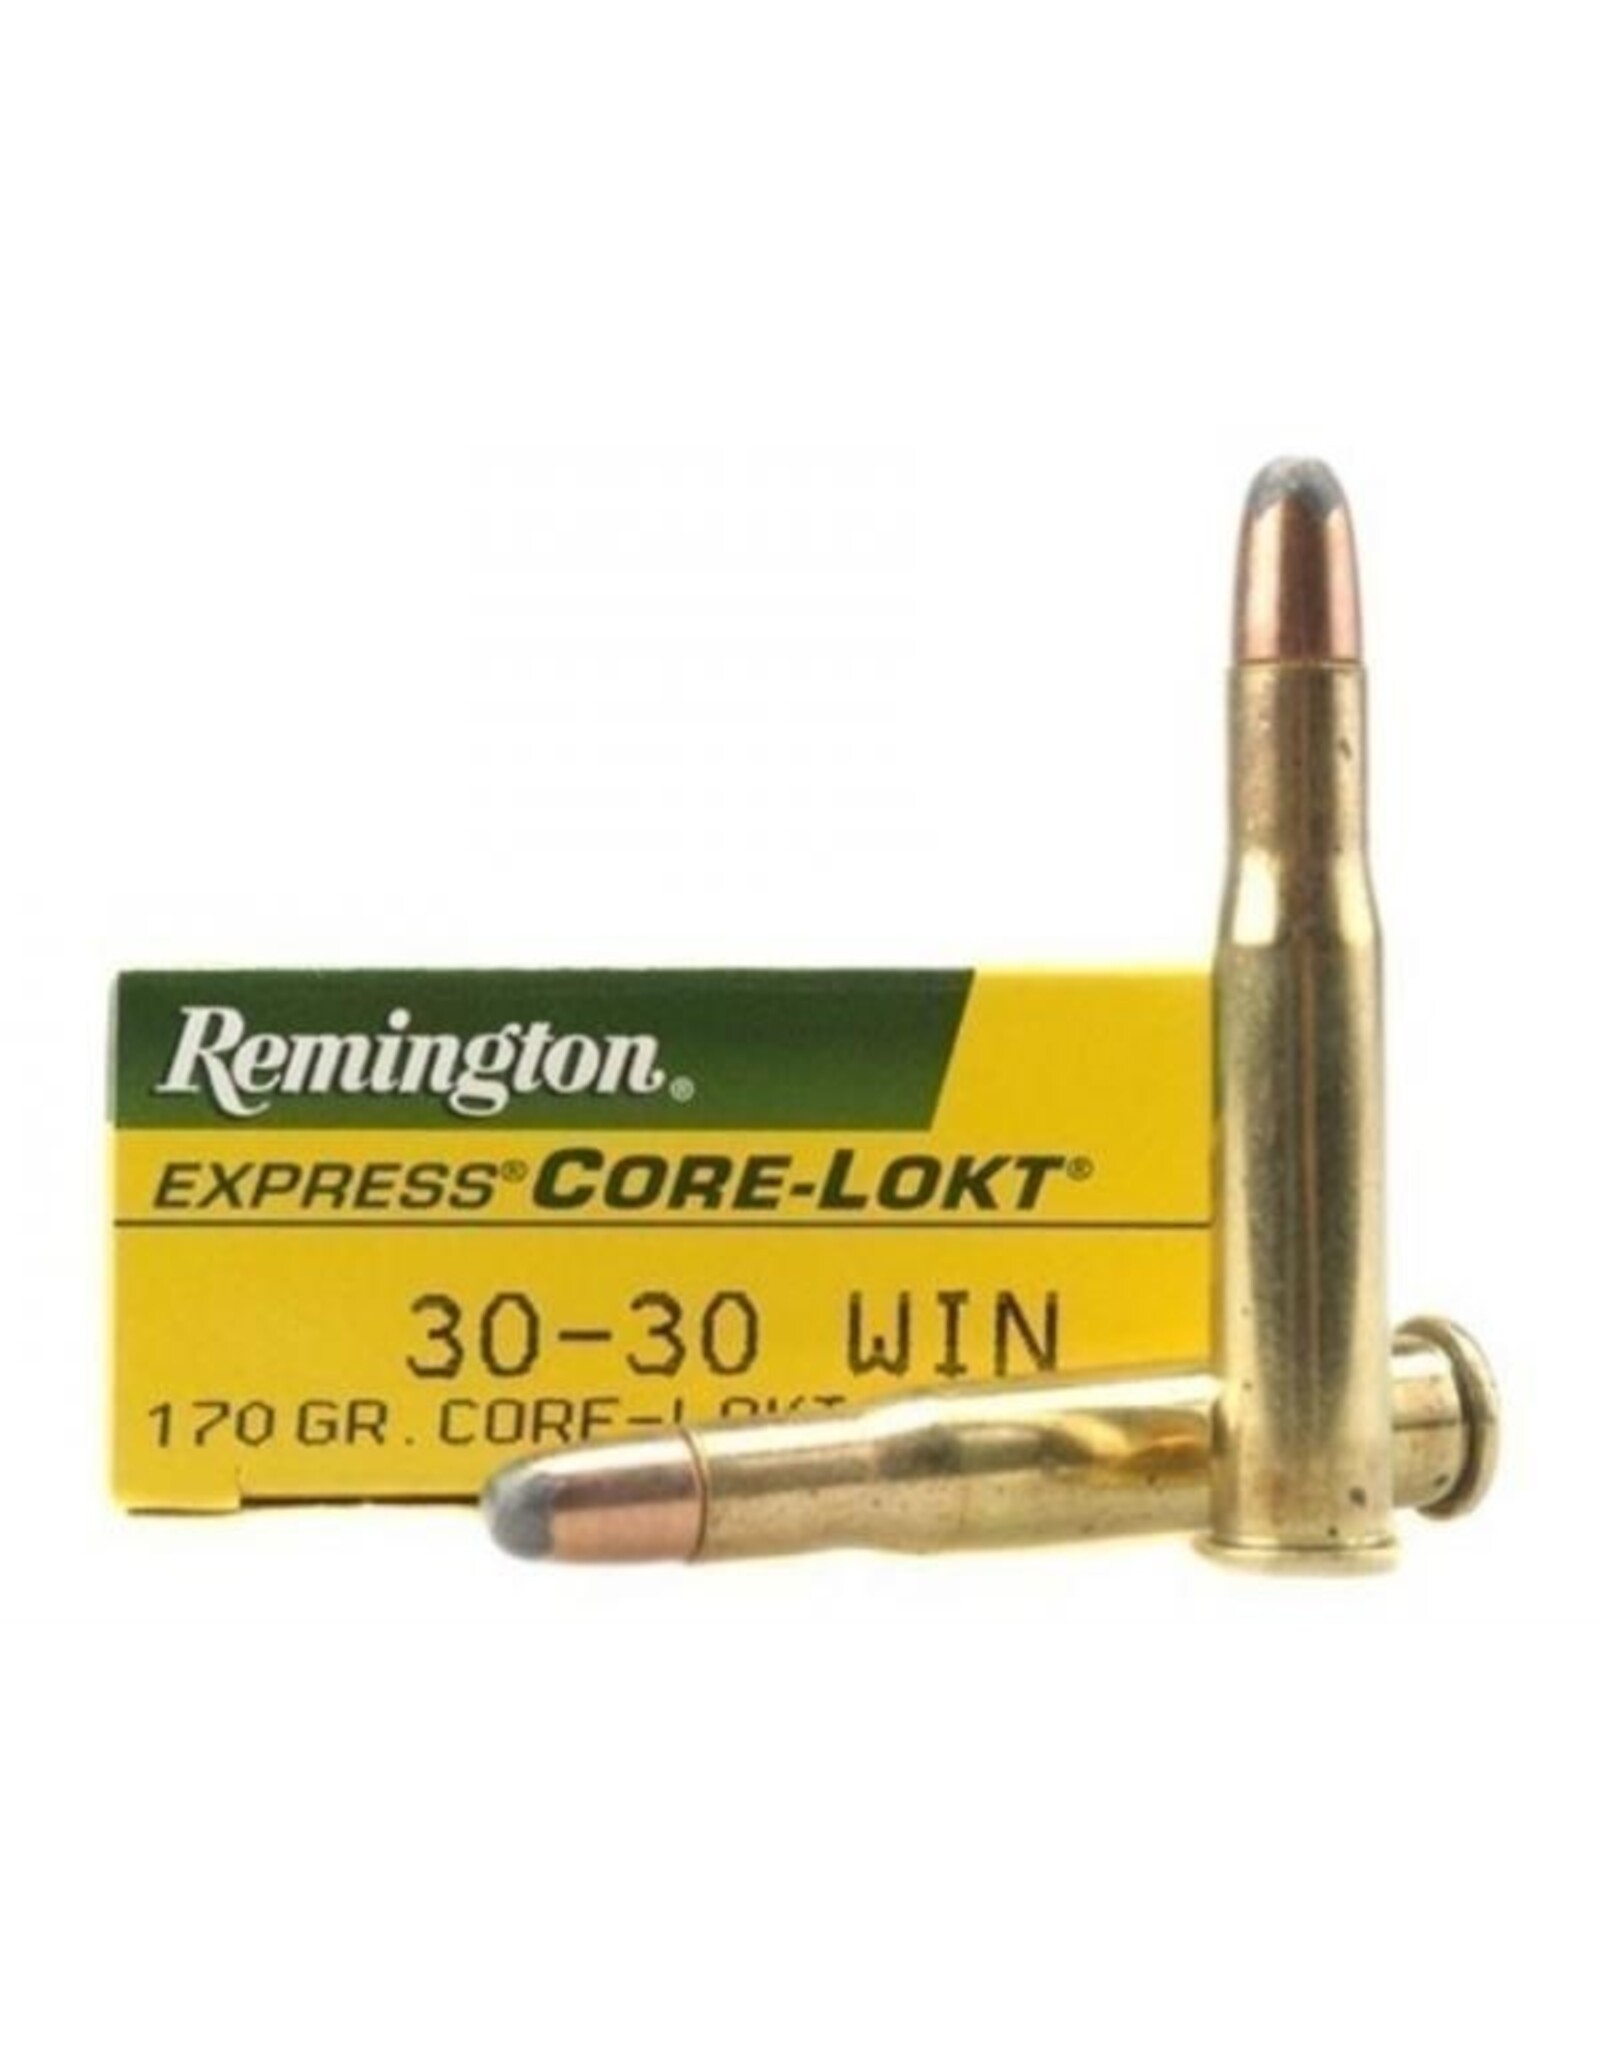 Remington Remington 27820 Core-Lokt Rifle Ammo 30-30 WIN, SP, 170 Grains, 2200 fps, 20, Boxed